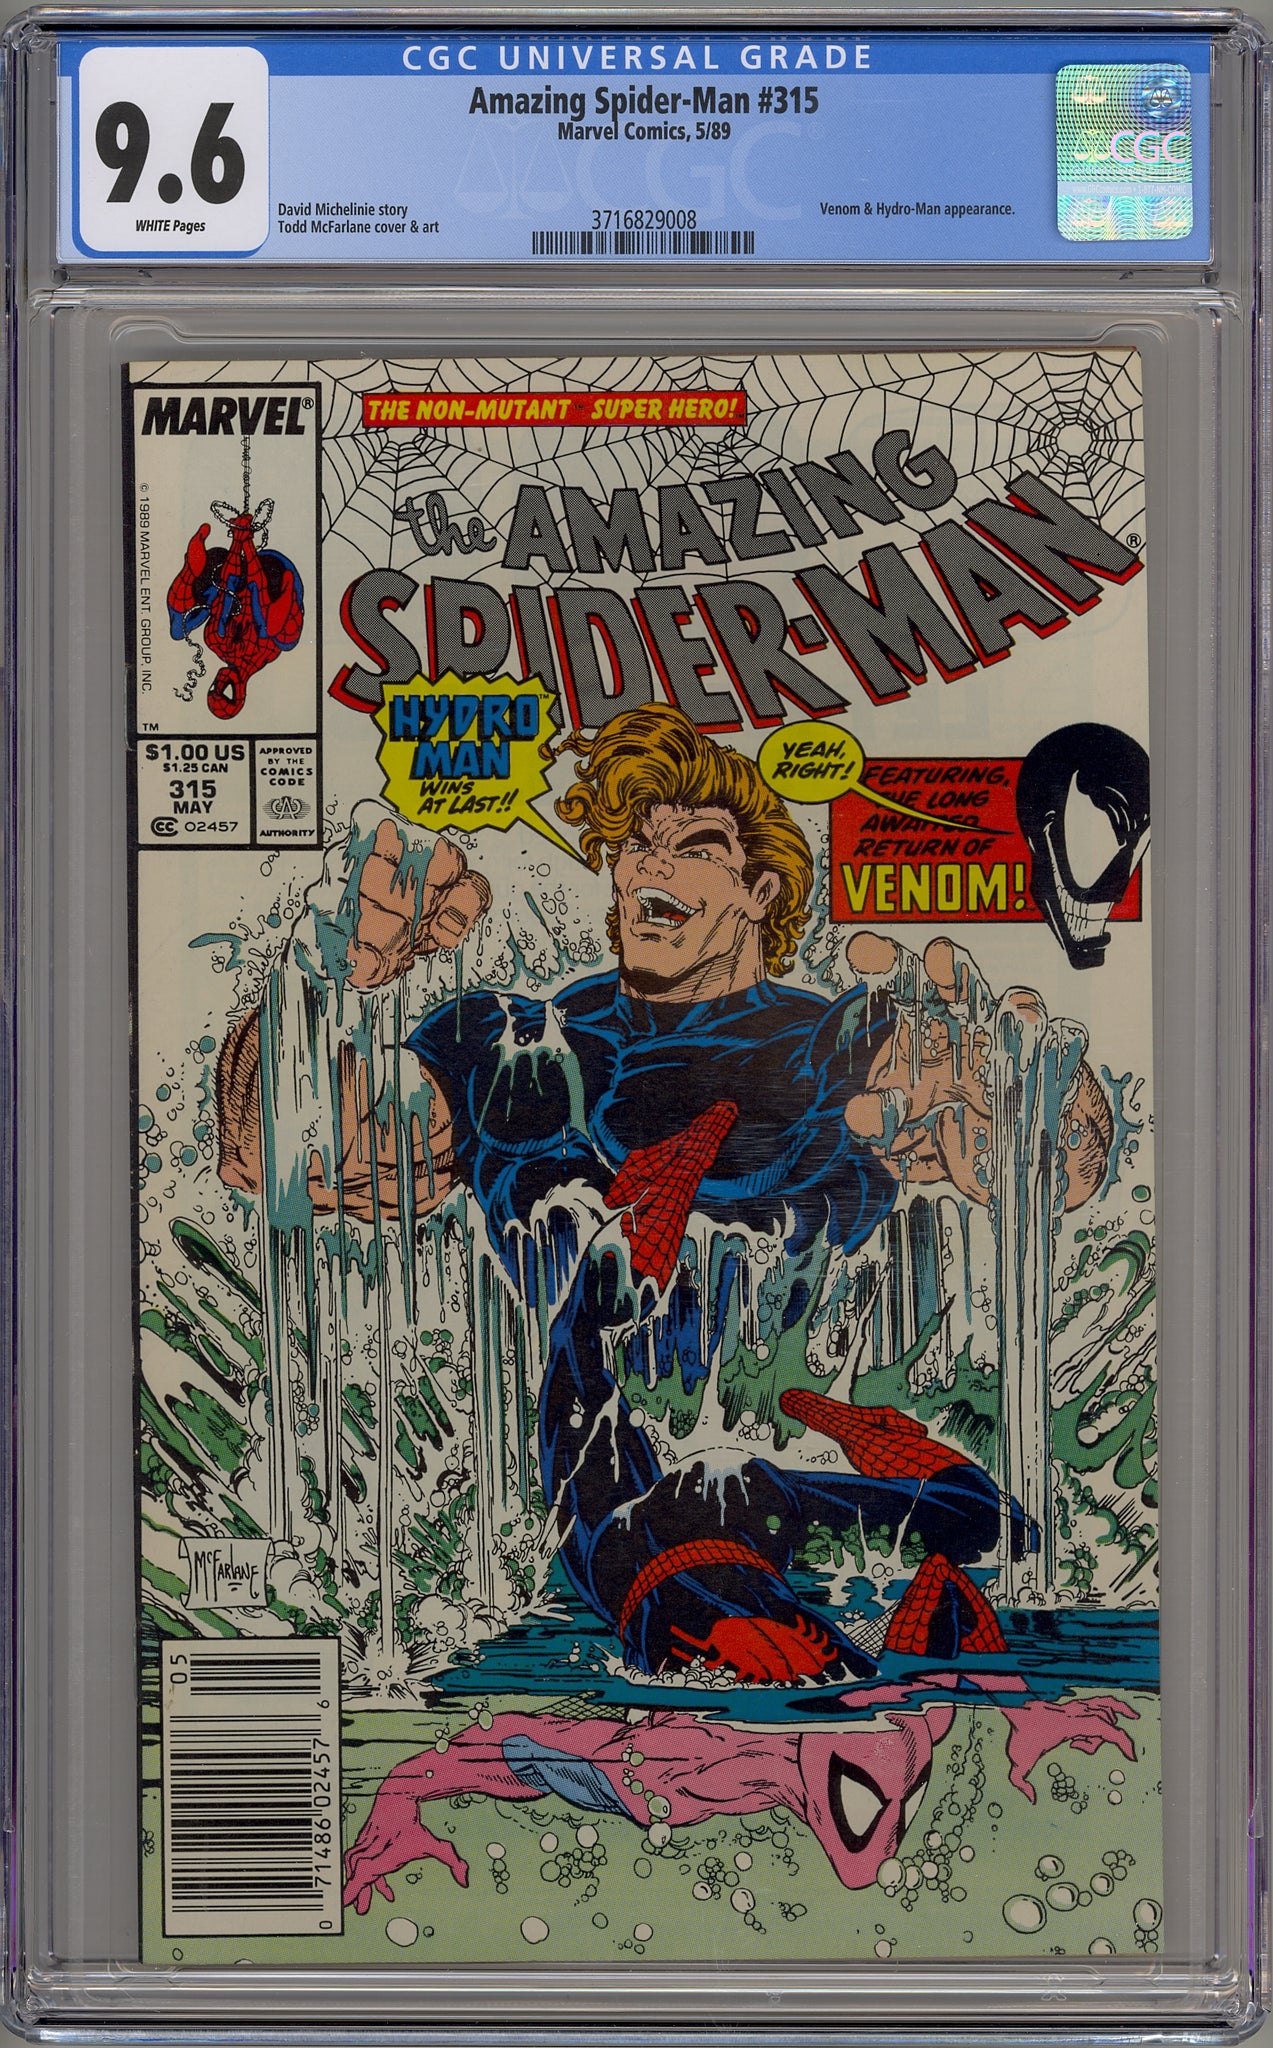 Amazing Spider-Man #315 (1989) newsstand edition - Hydro Man, Venom